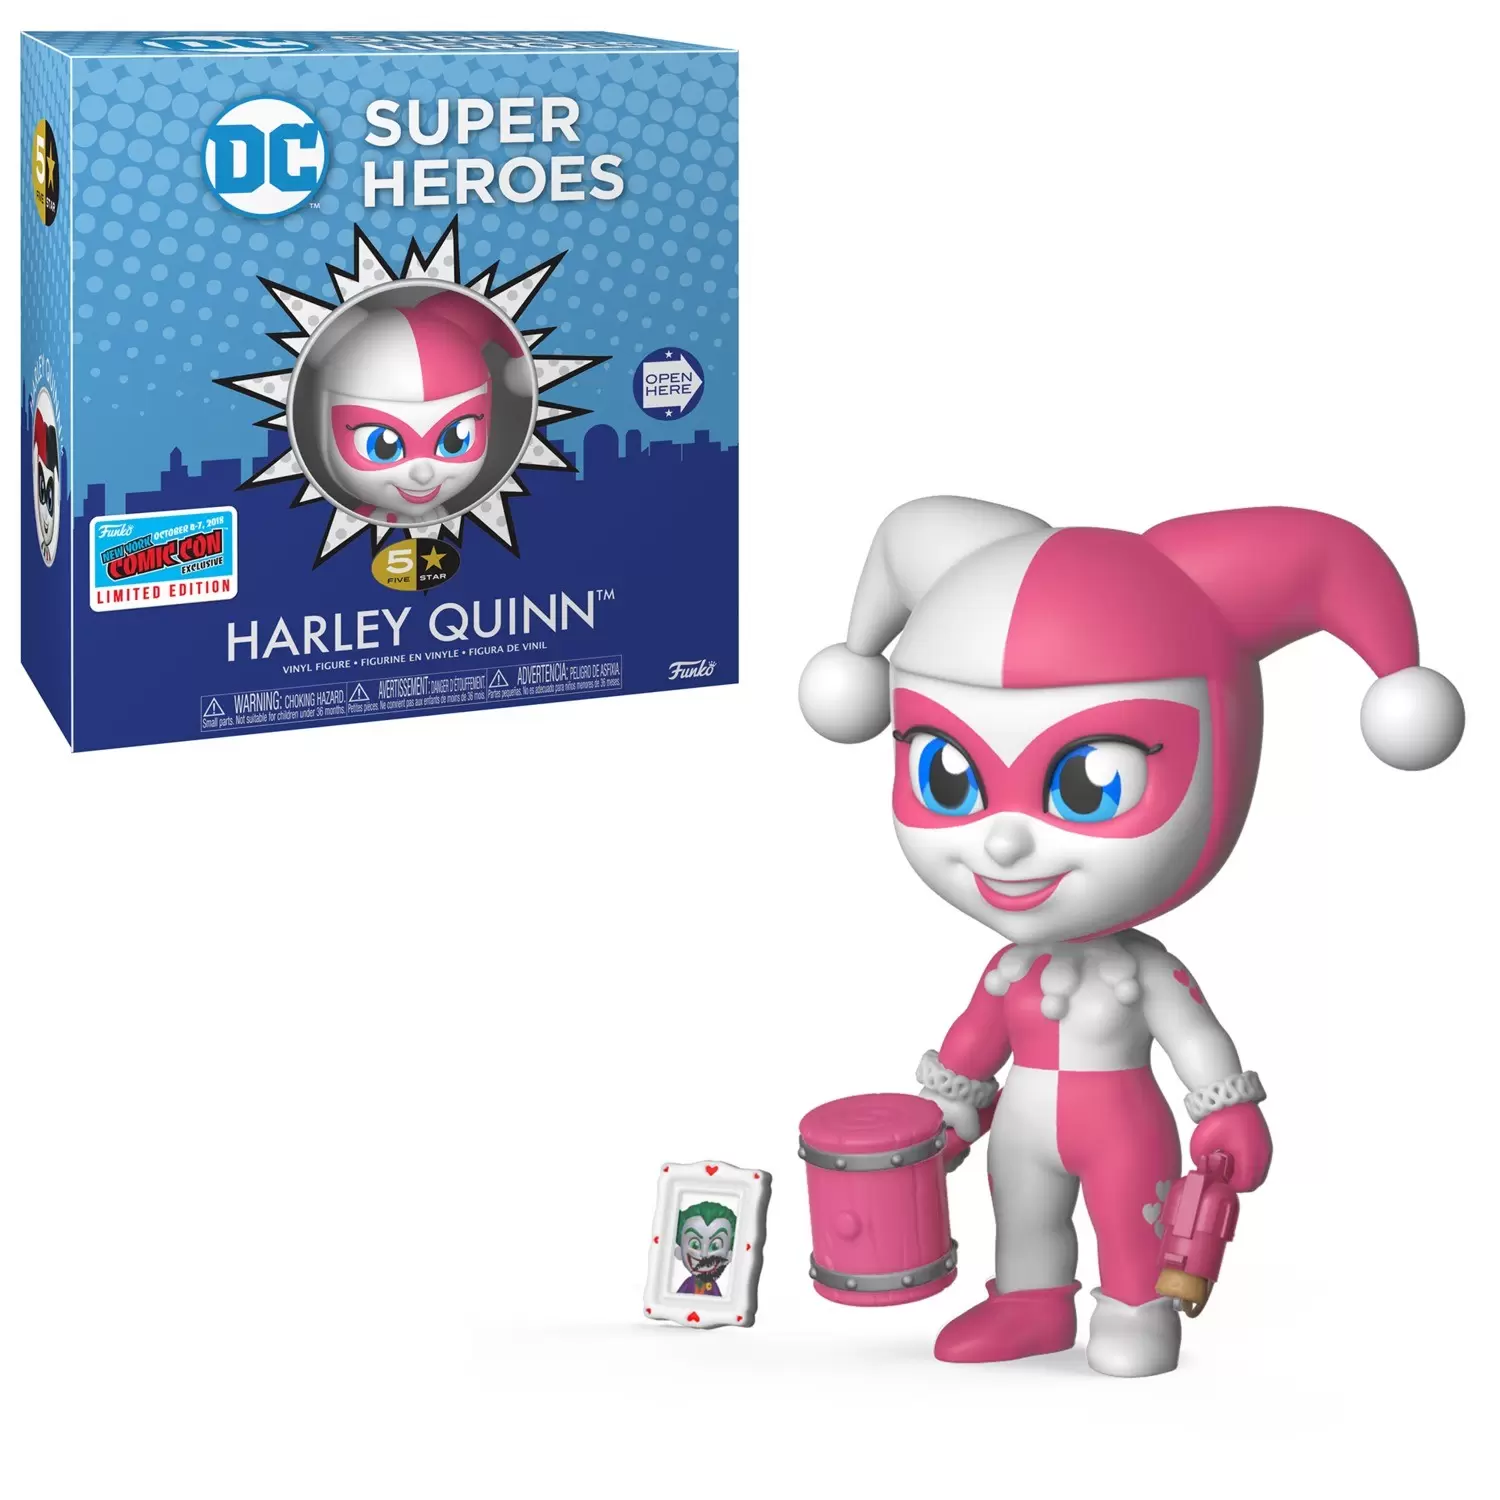 DC Super Heroes - DC Super Heroes - Harley Quinn Pink